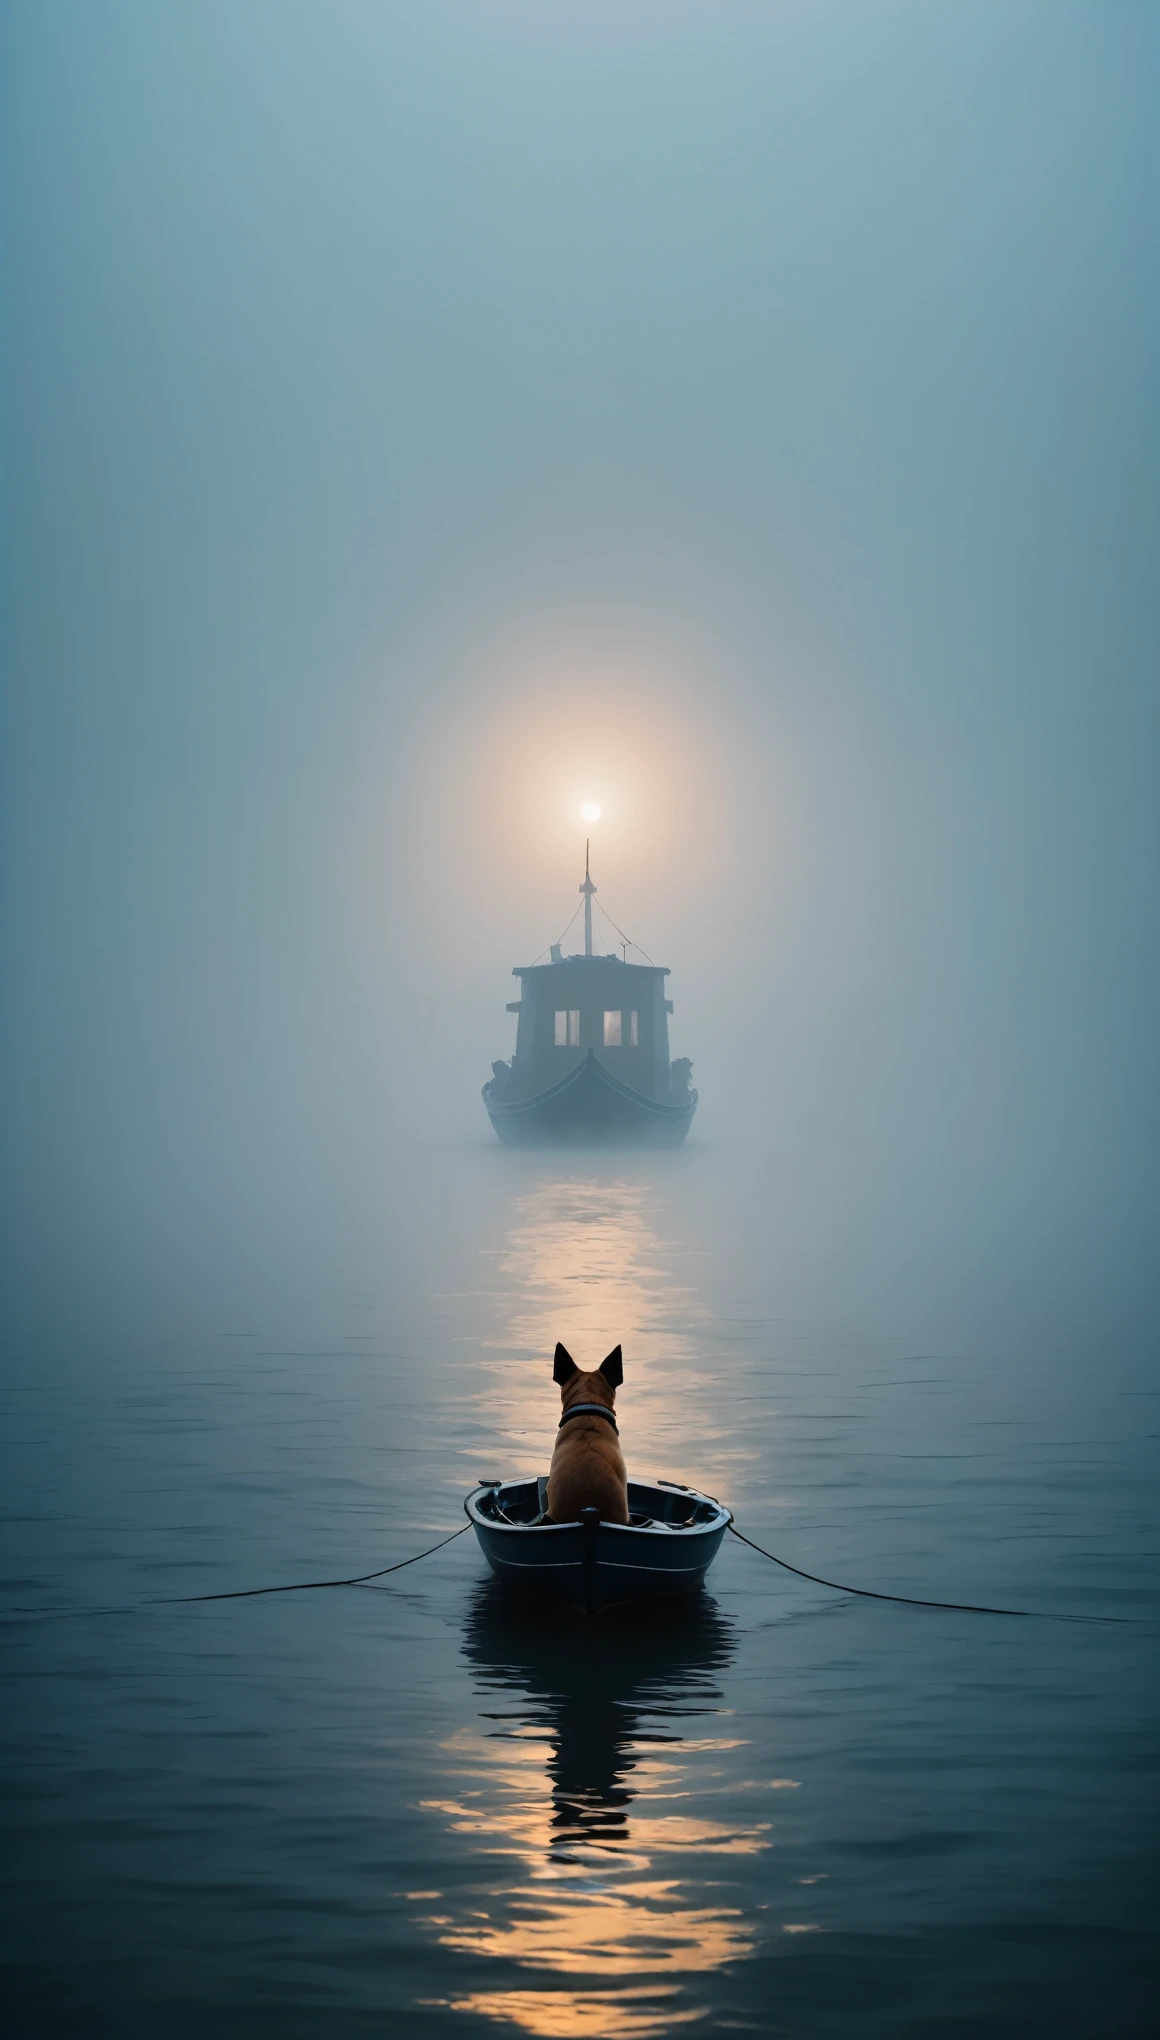 籠罩在濃霧中的廣闊海洋上空，小狗在船上，Felicia Simien 與吉卜力工作室啟發的極簡主義攝影作品《Adventure》，極簡主義，美術，戲院燈光，負空間，黑暗藝術，超現實主義